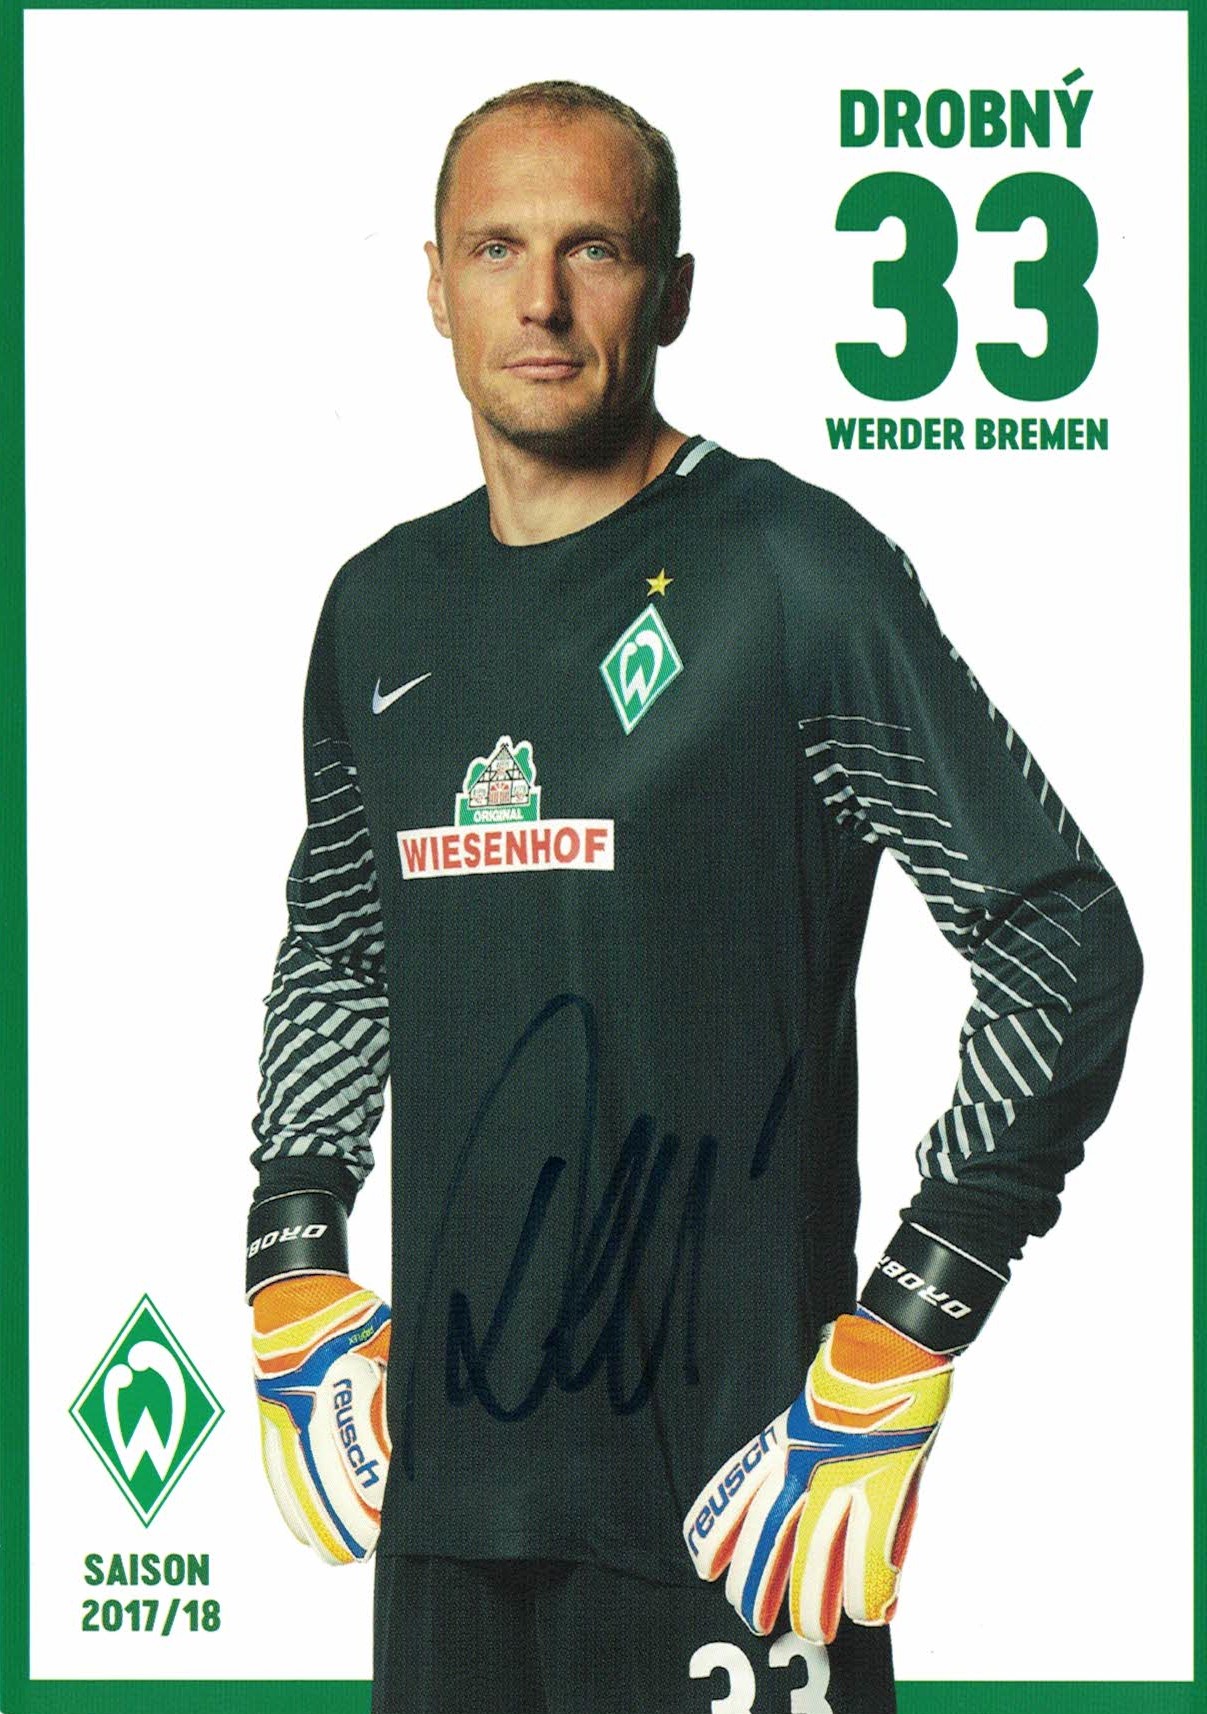 Jaroslav Drobny Werder Bremen 2017/18 Podpisova karta autogram